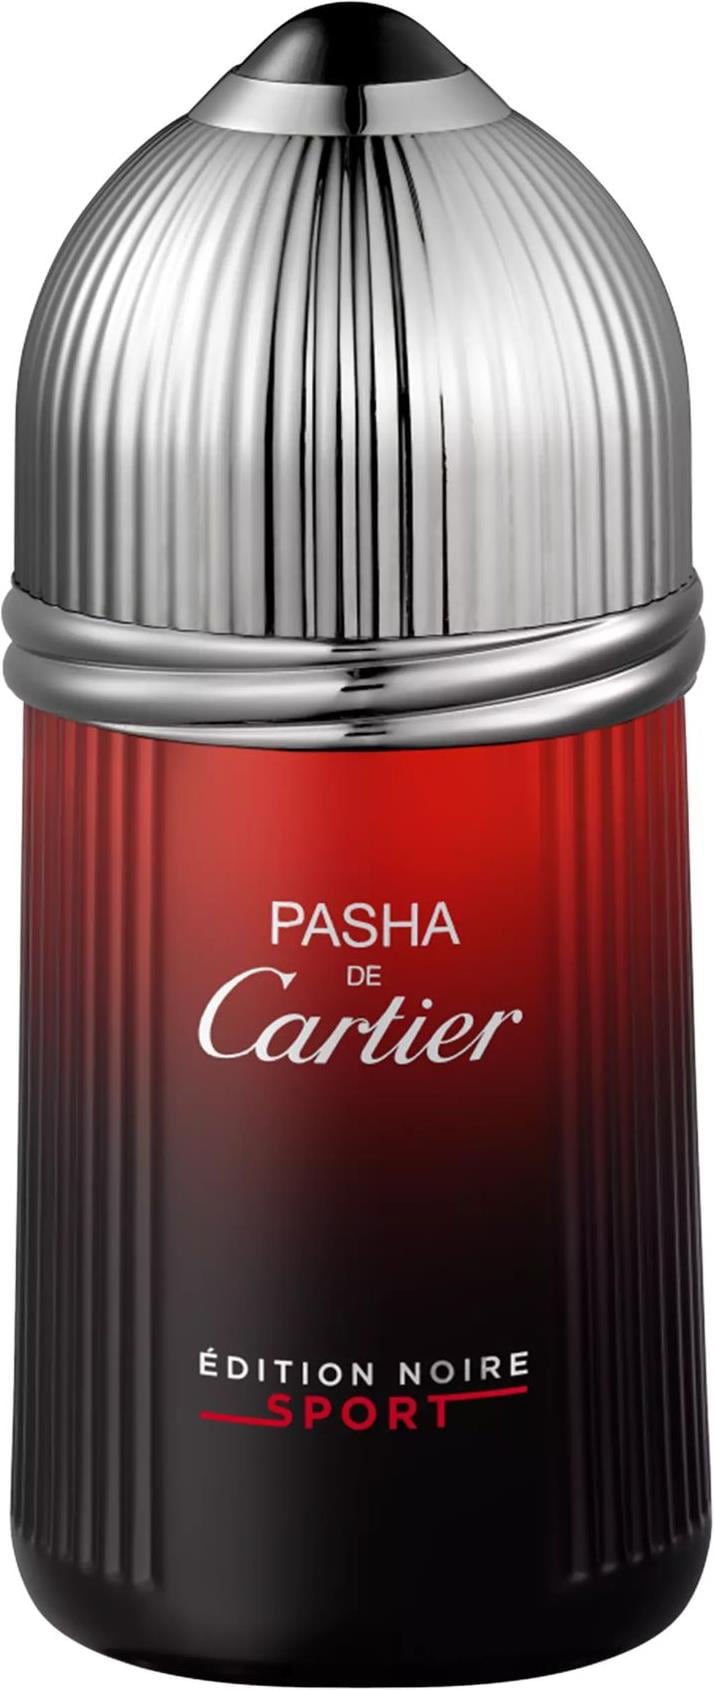 Cartier Pasha Edition Noire Sport (Eau de Toilette 100 ml) Galaxus